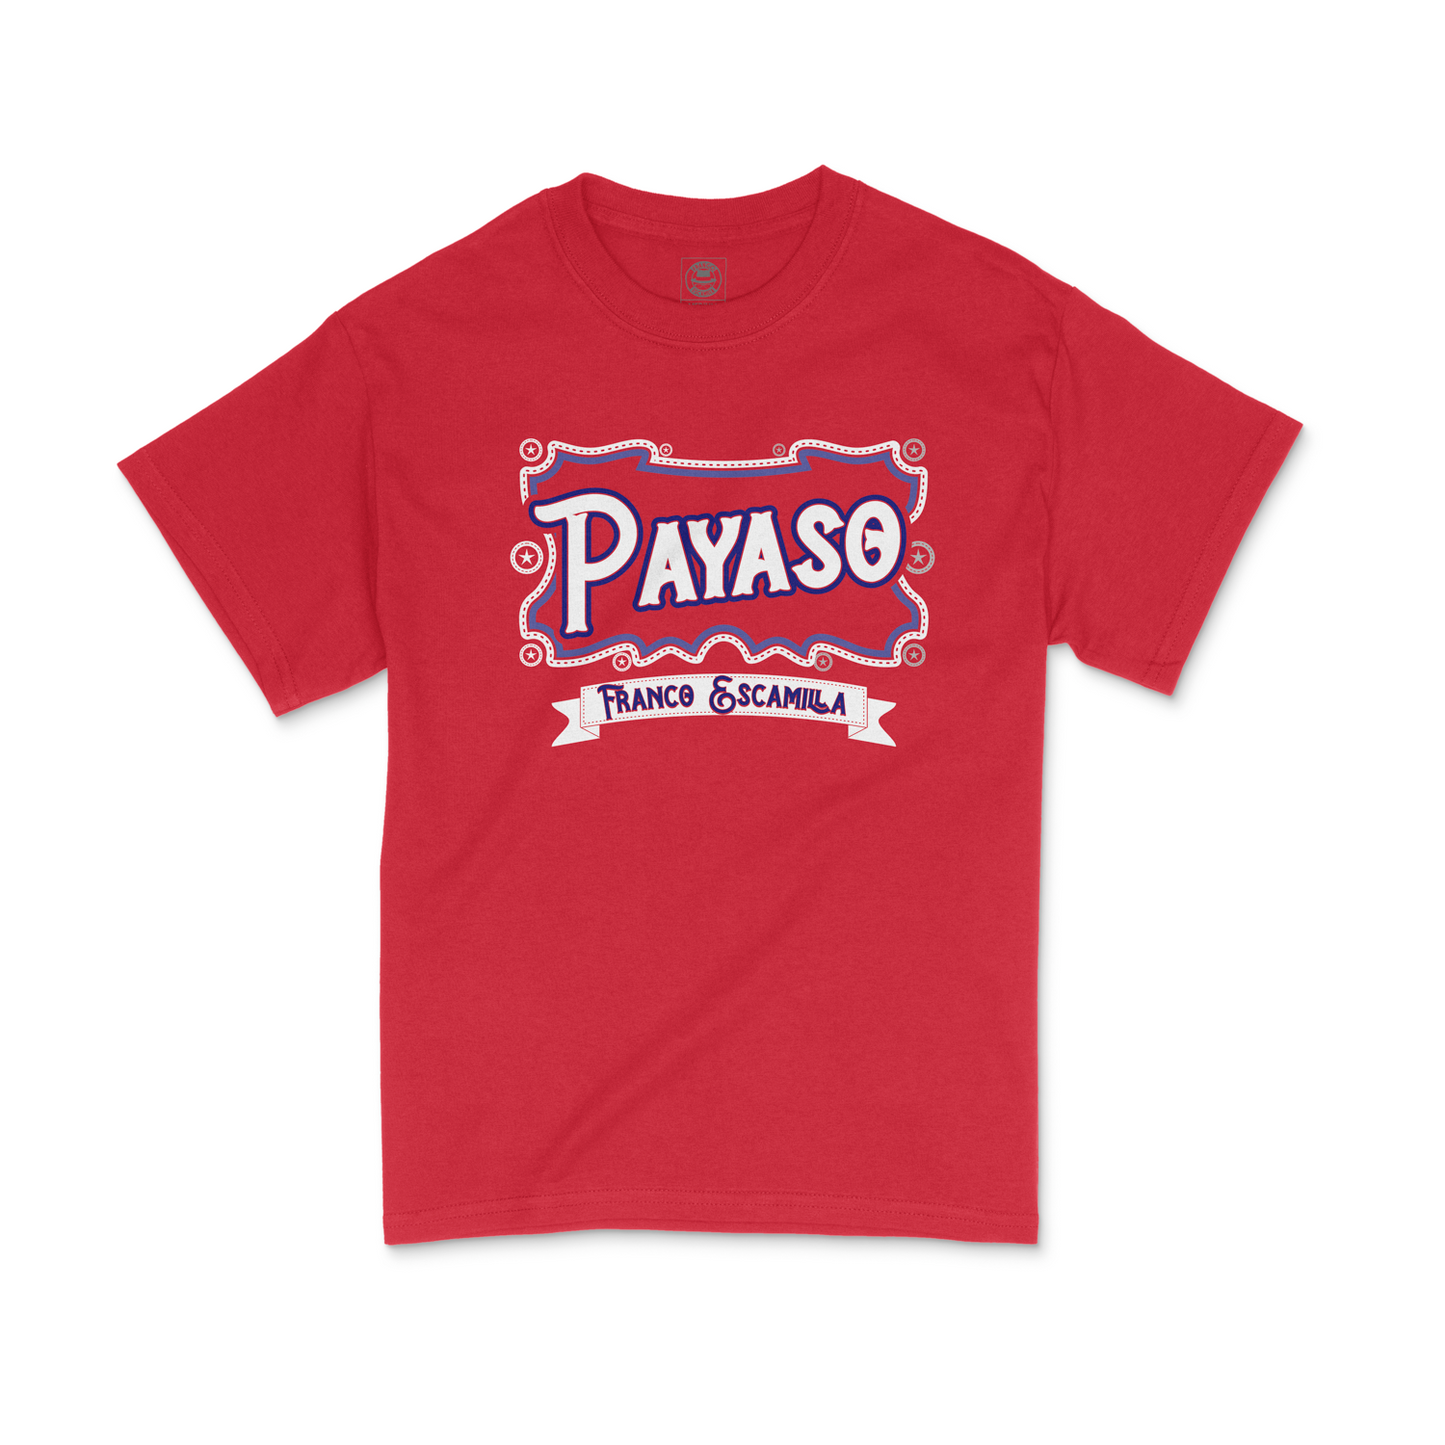 Payaso - Shirt